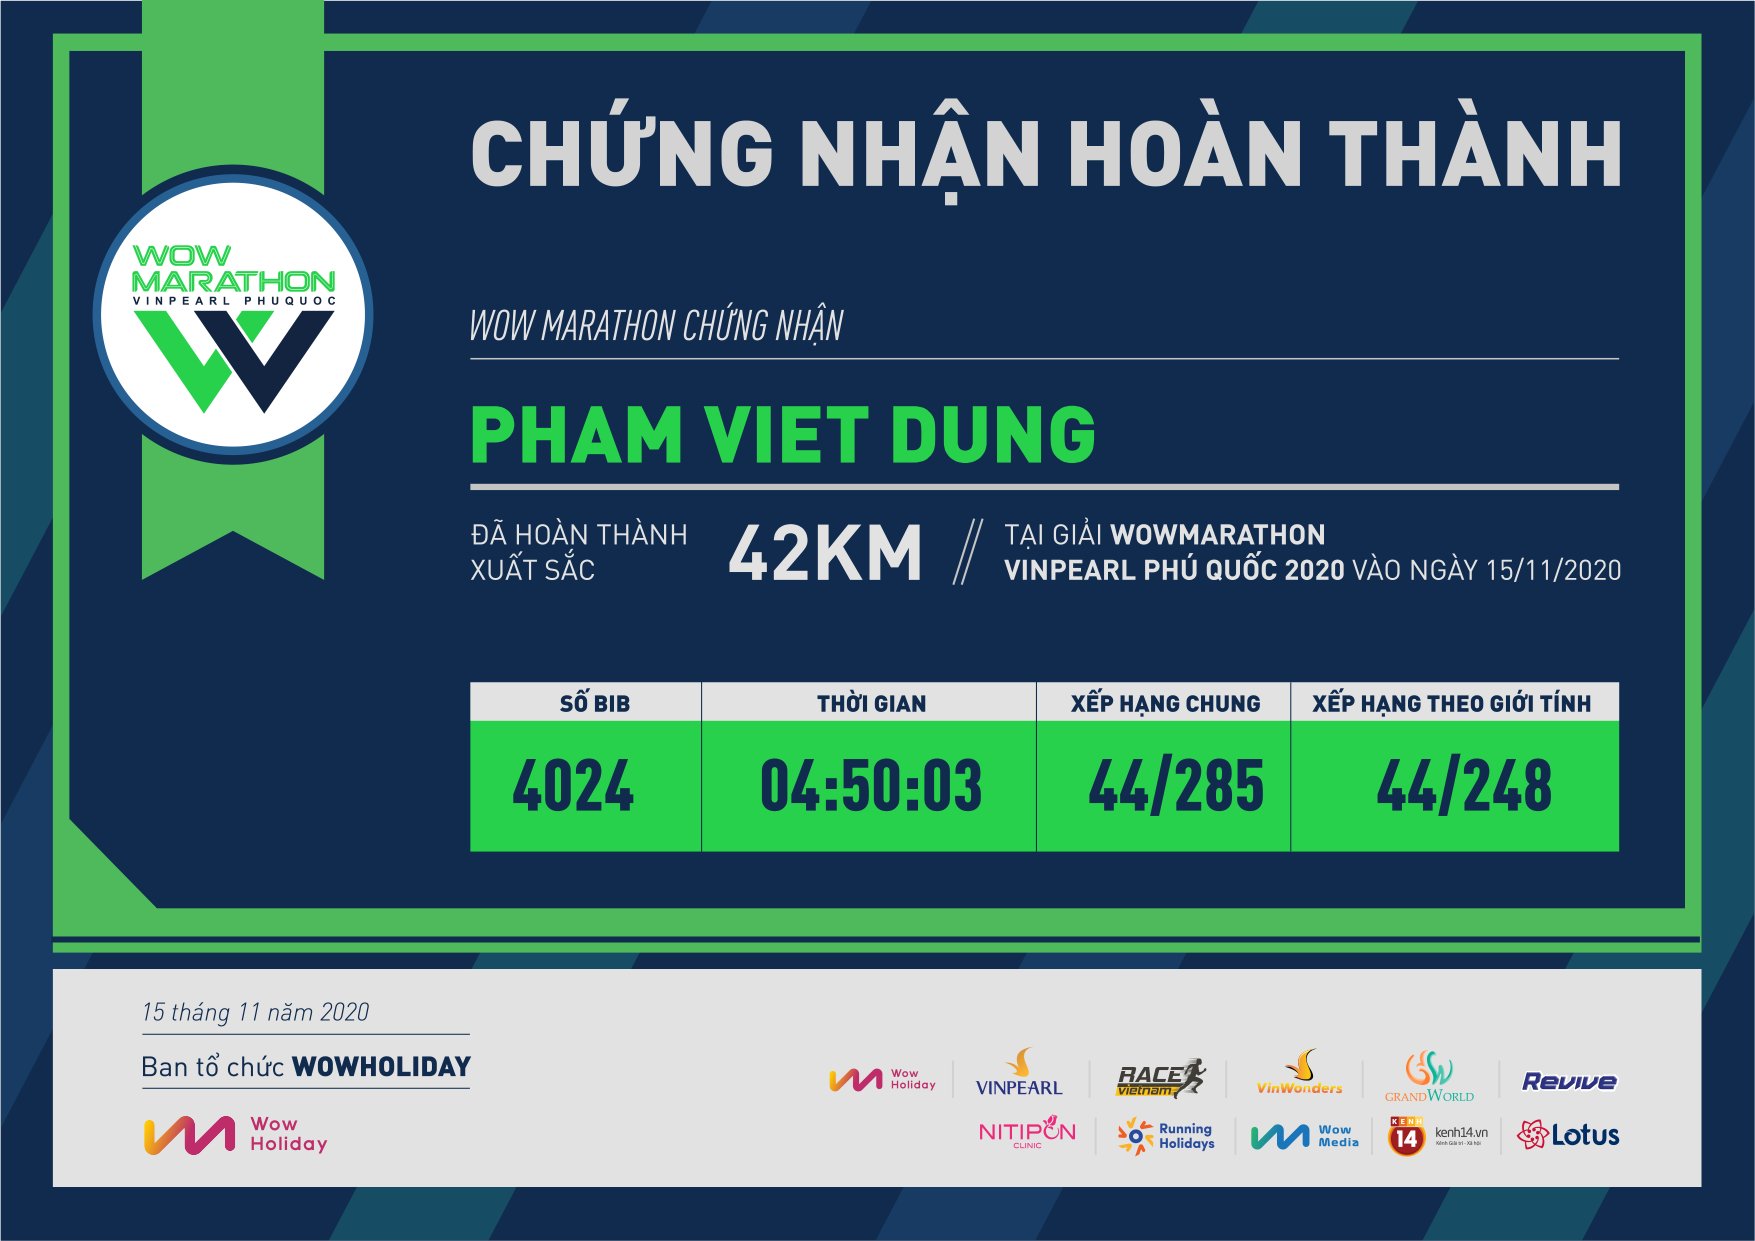 4024 - Pham Viet Dung